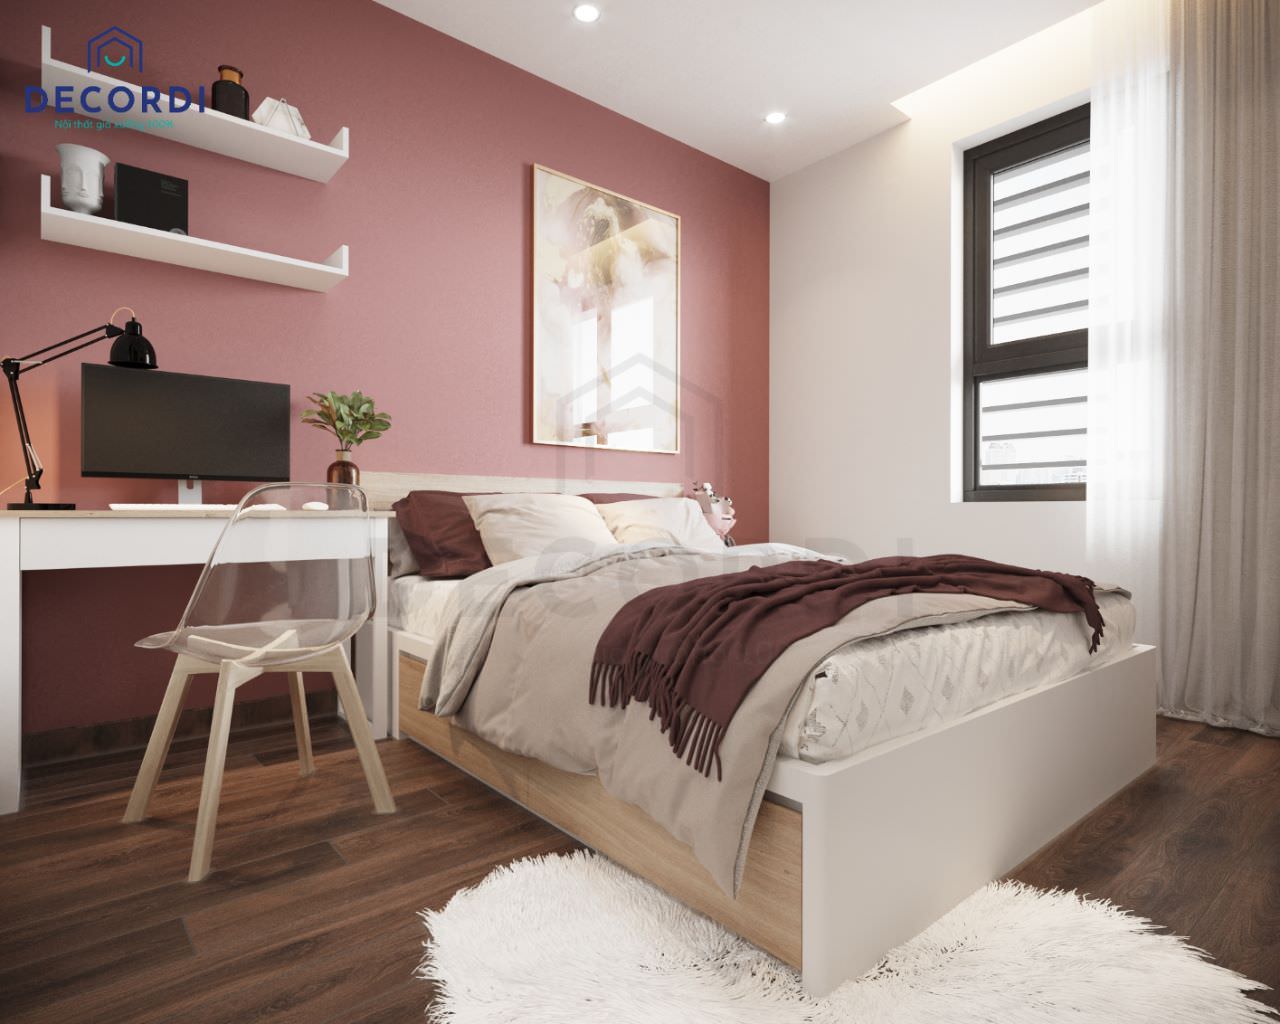 Thiết kế phòng ngủ tông màu trắng làm chủ đạo và sử dụng thêm màu hồng đậm để sơn tường, làm điểm nhấn đặc biệt cho không gian